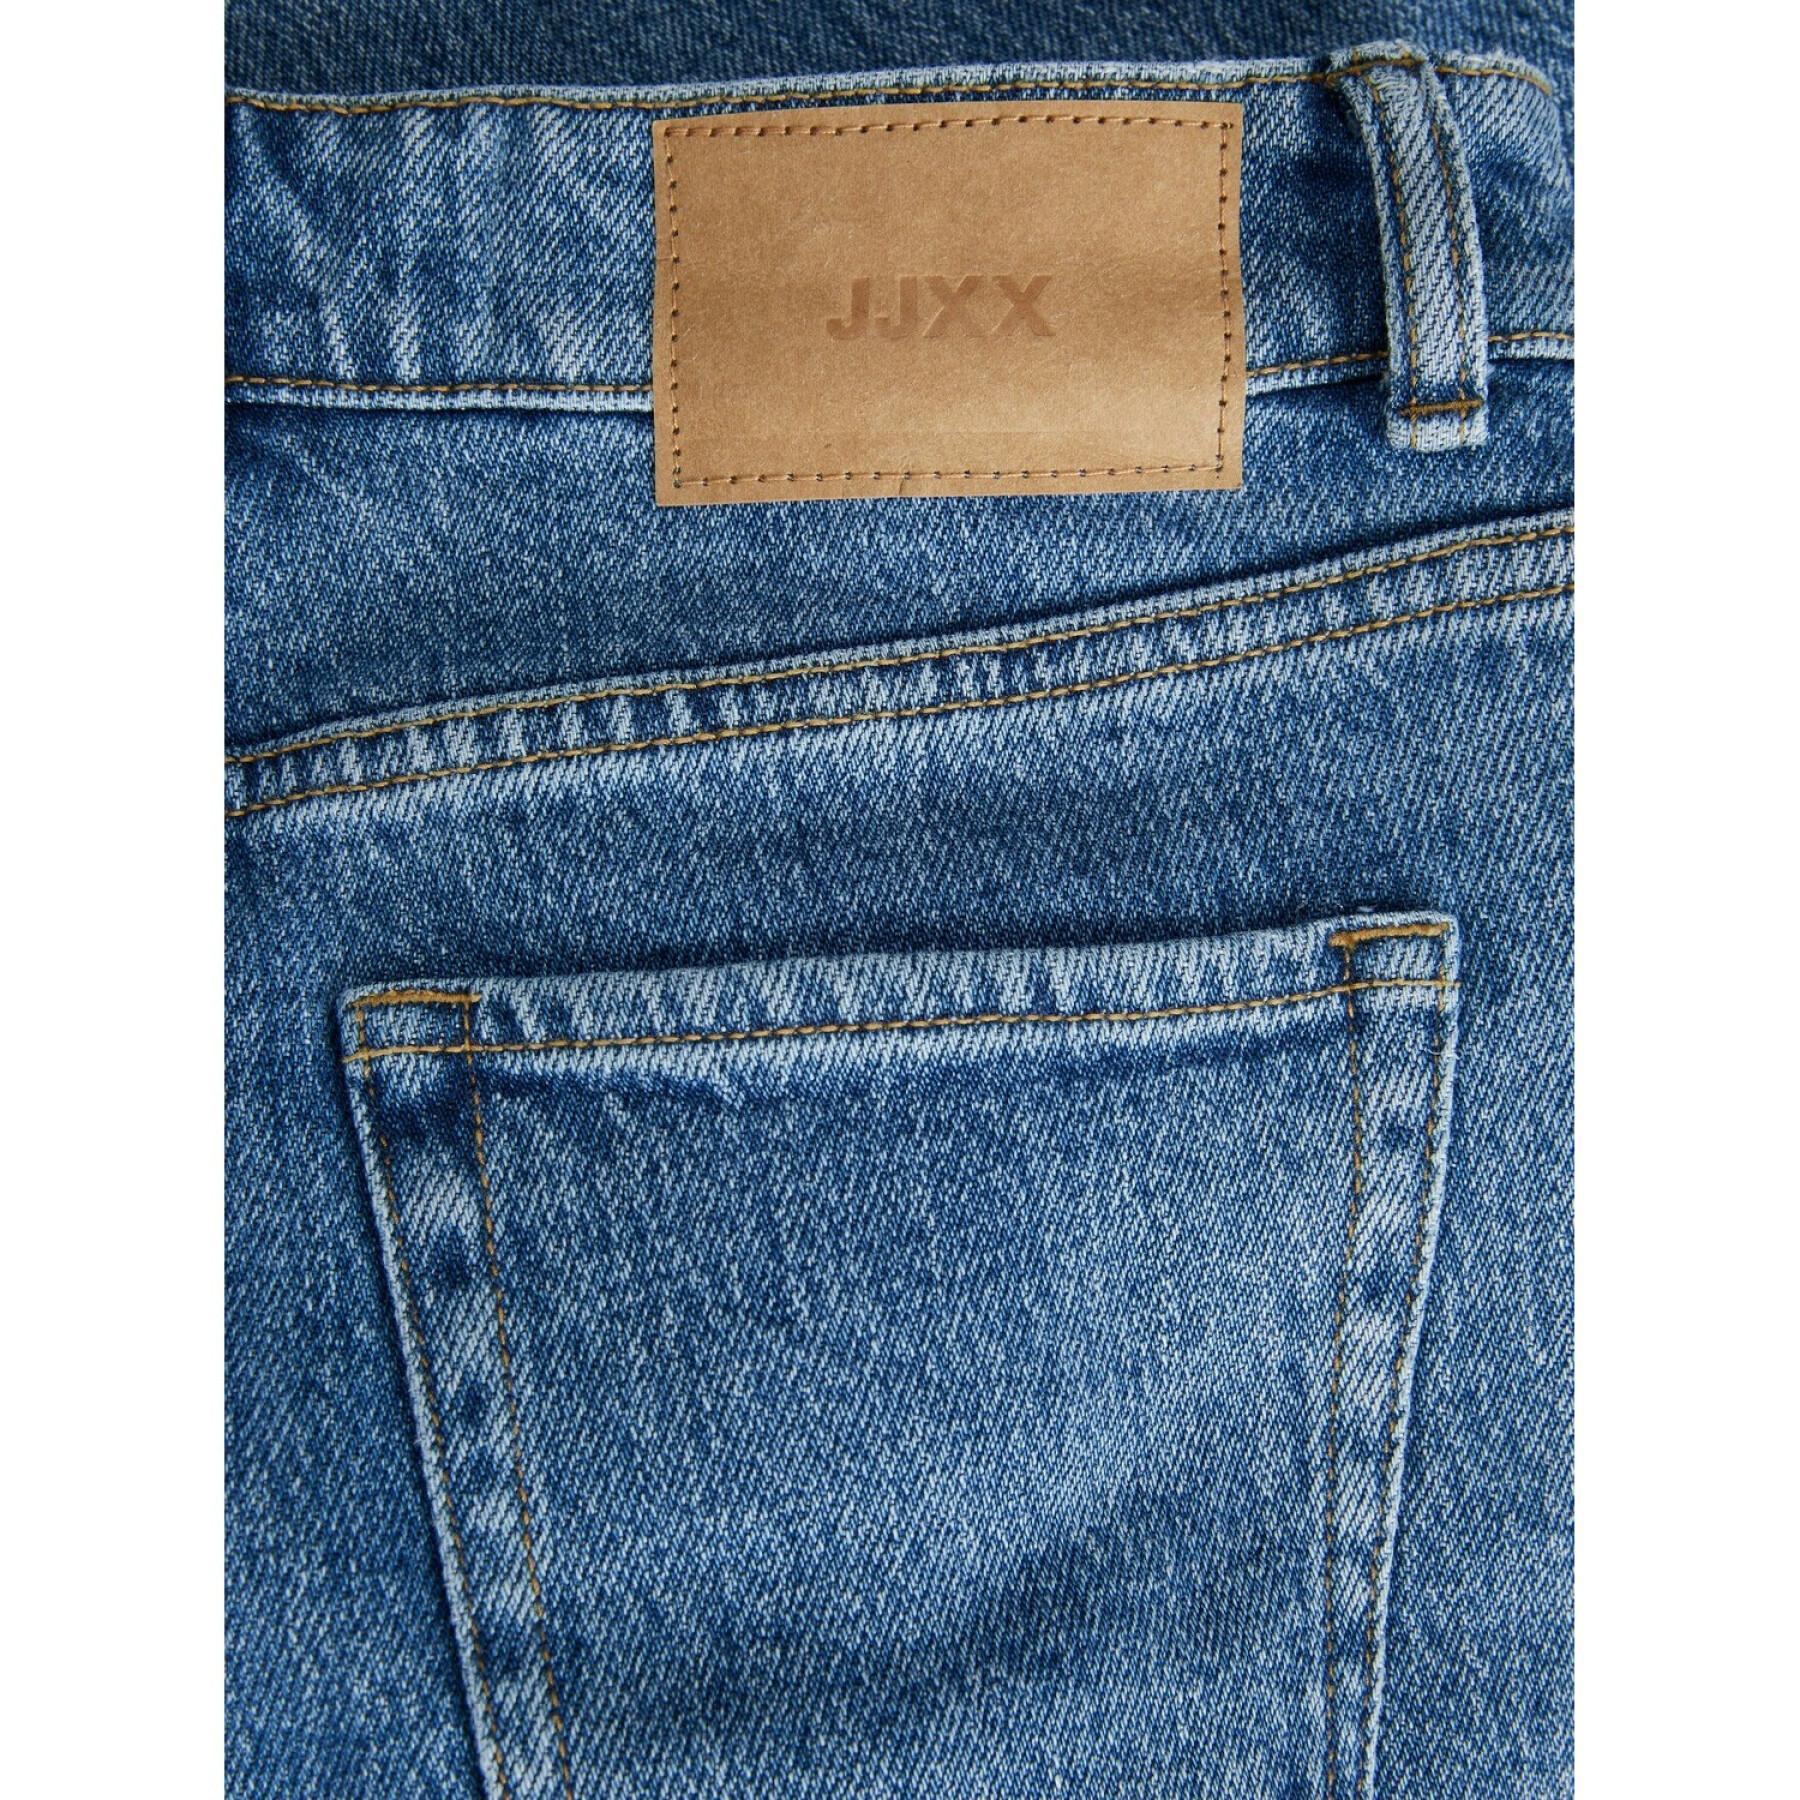 Dames skinny jeans JJXX berlin nc2003